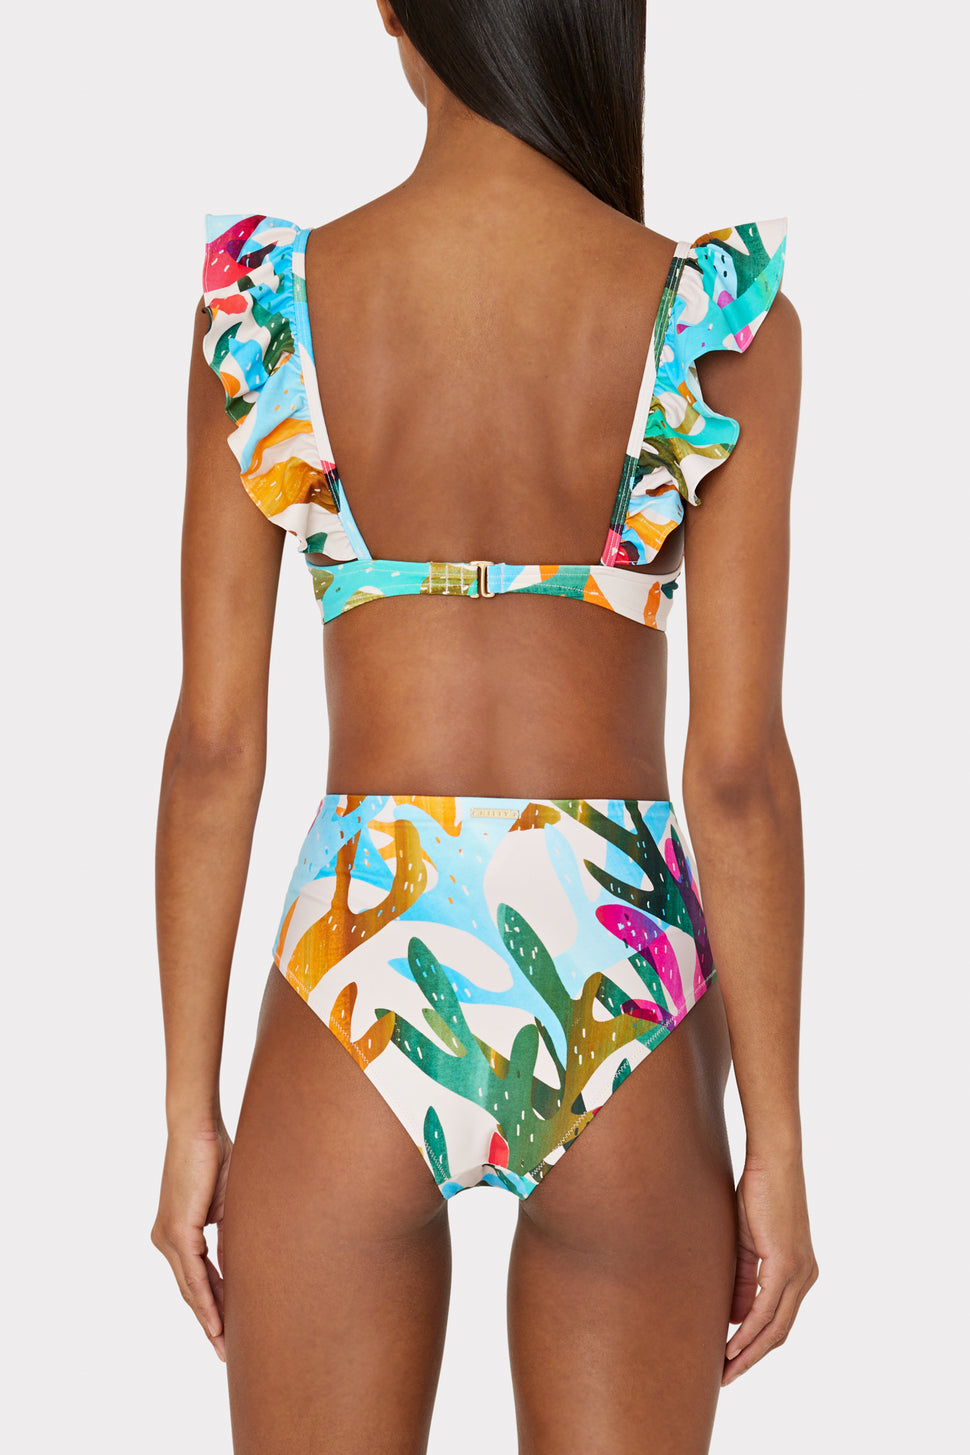 Ruffle Bandeau Tankini Top in Living Art, Bikini